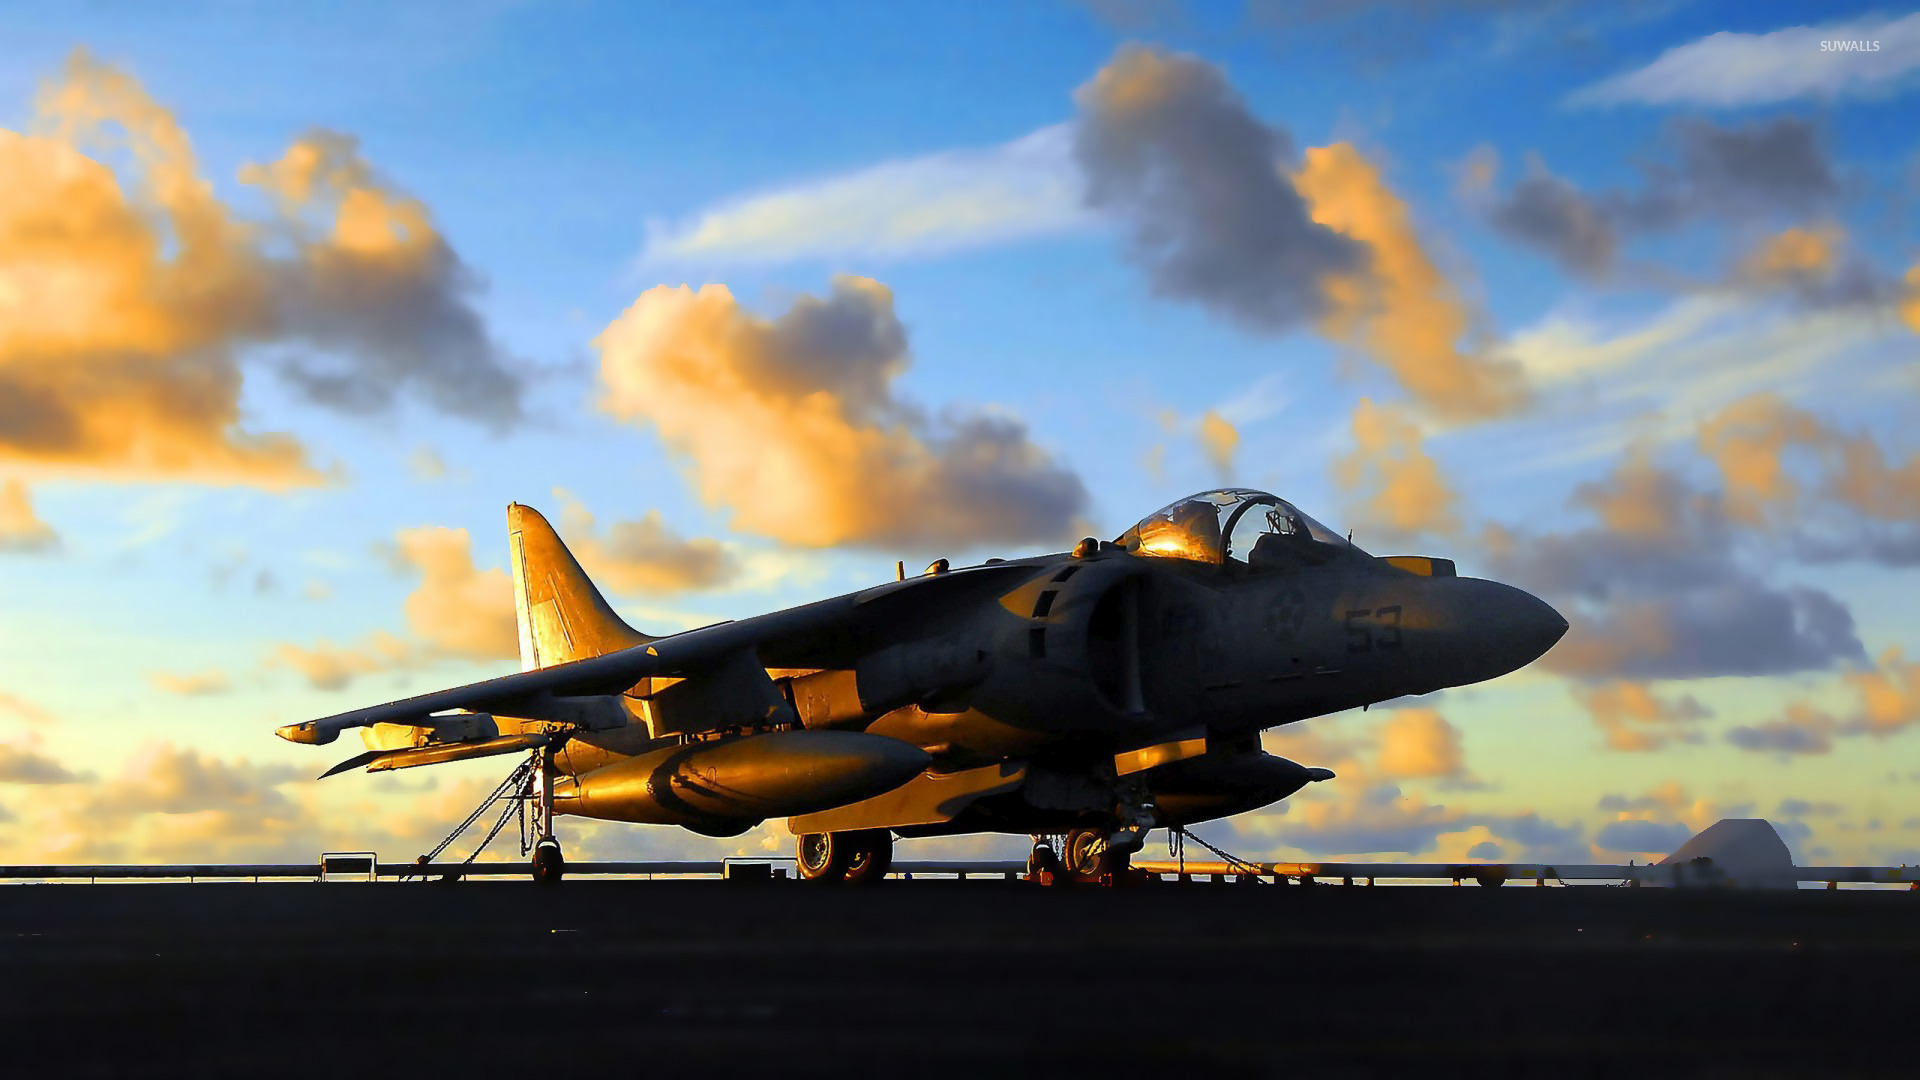 Sunset light reflecting on a Harrier Jump Jet wallpaper 